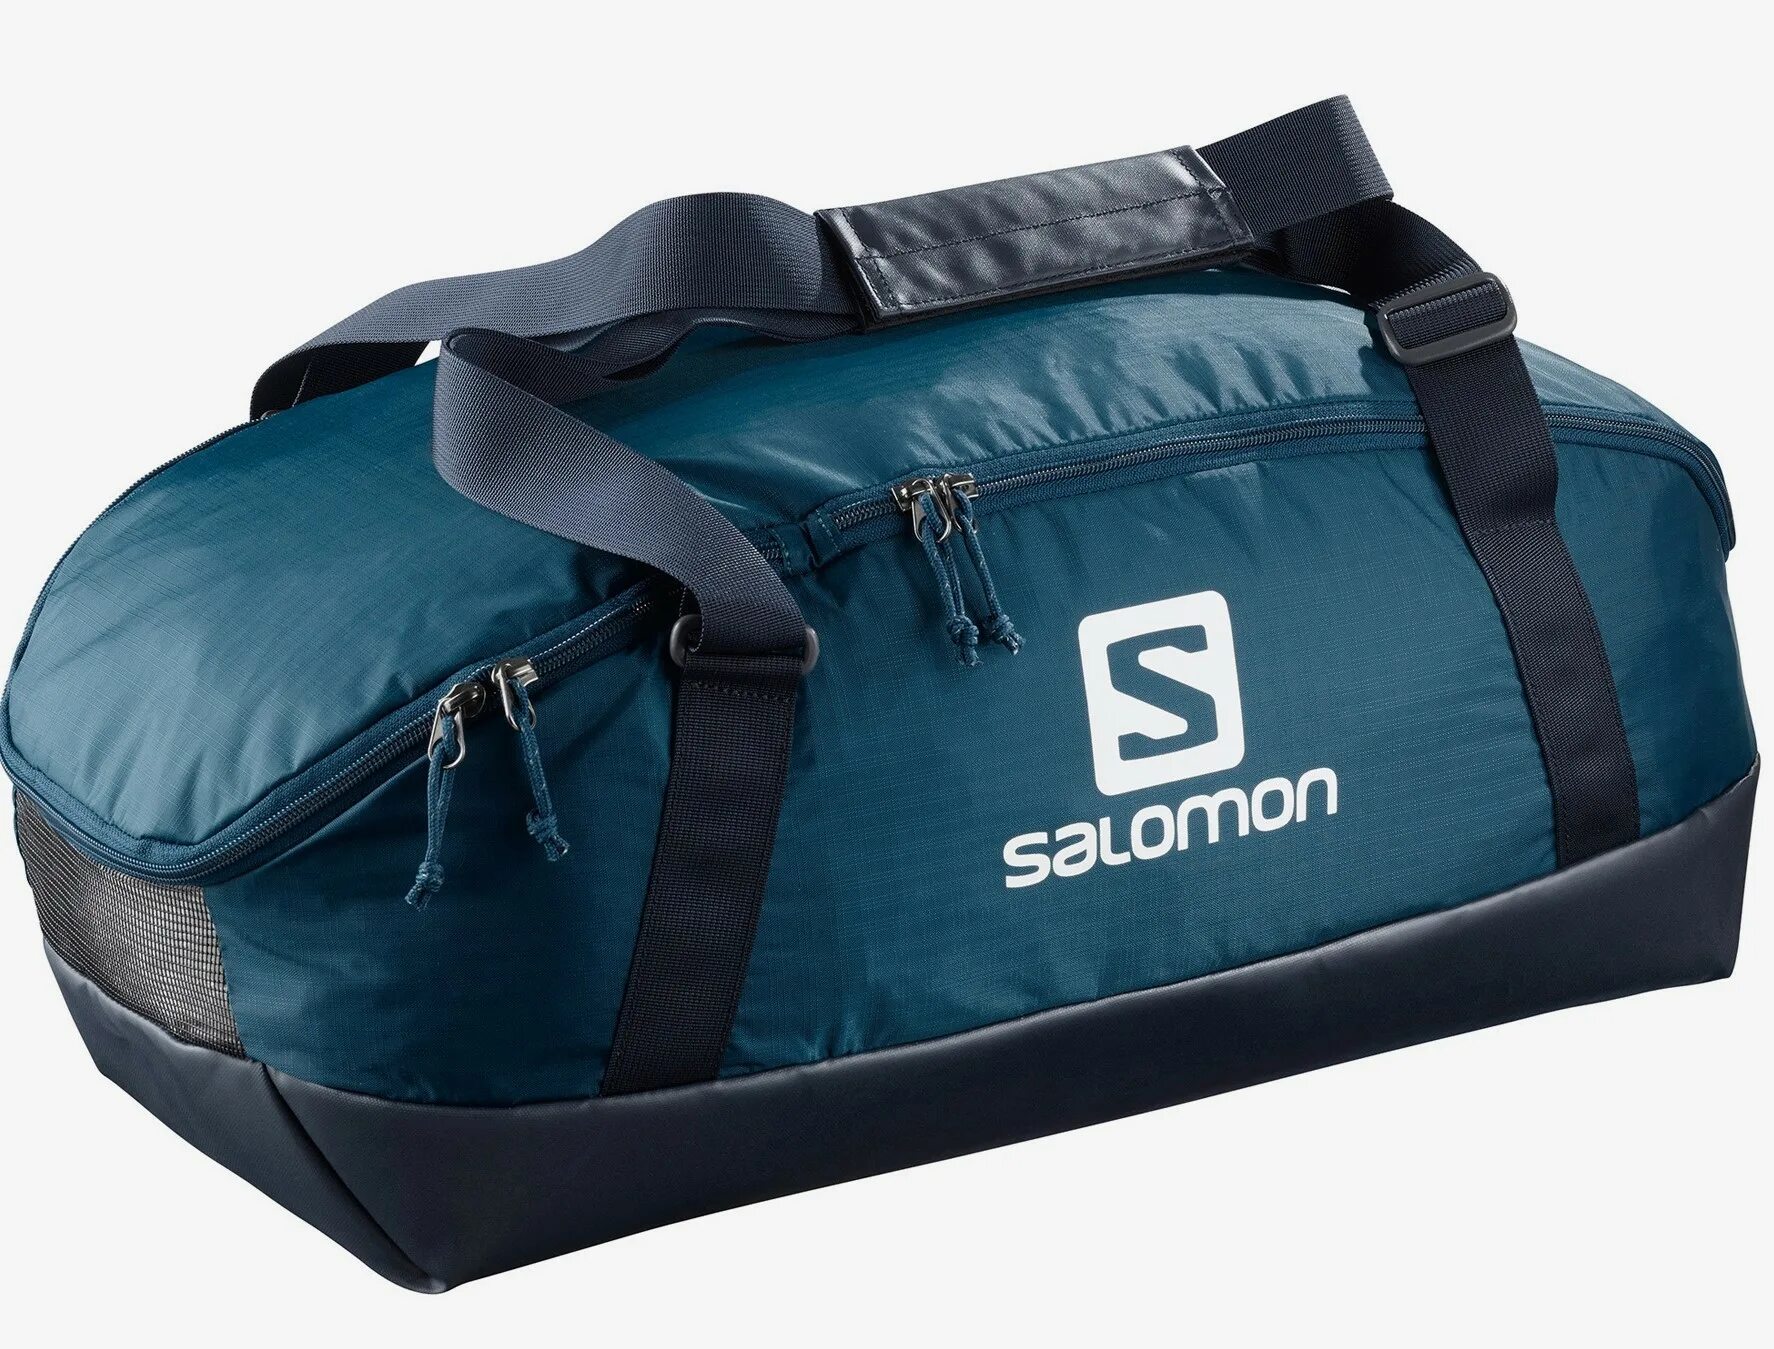 Salomon Prolog 40. Спортивная сумка Salomon. Спортивная сумка Salomon мужская. Сумка дорожная Salomon. Спортивная сумка с отделениями